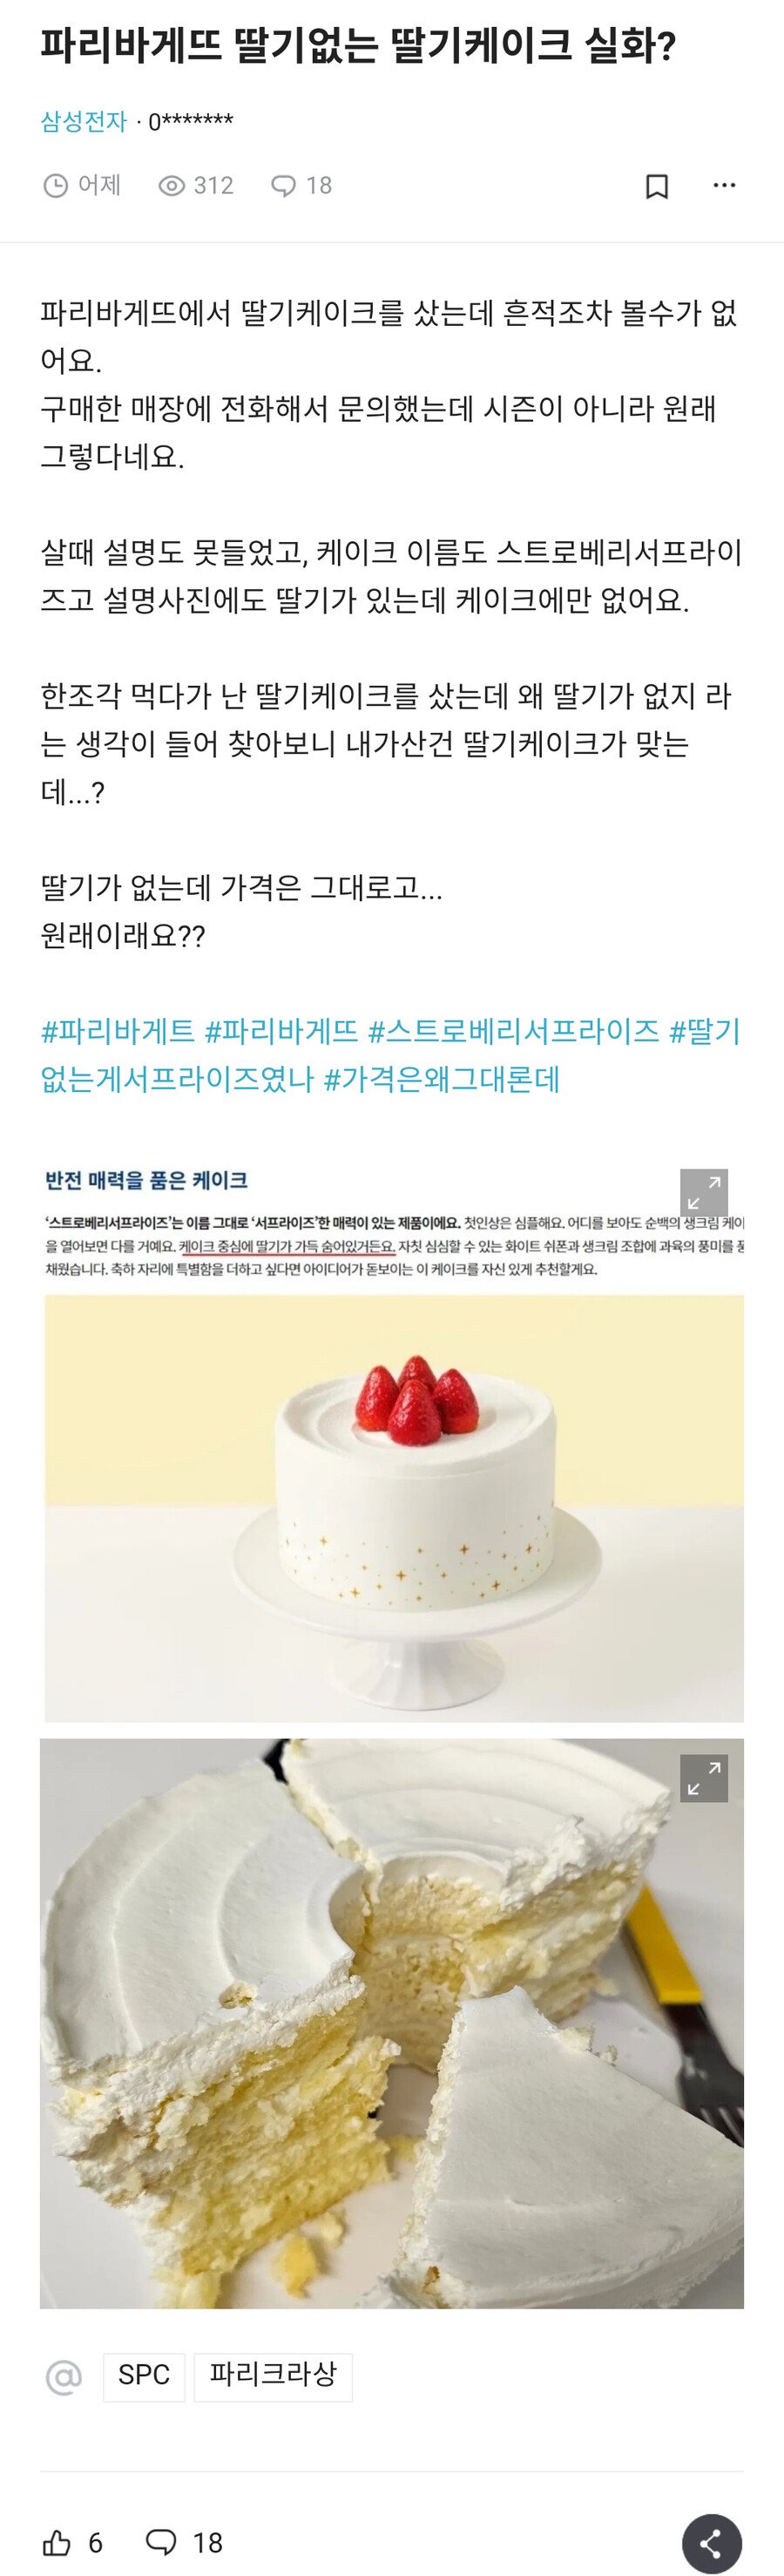 11 파리바게트 딸기없는 딸기케이크 구입한 후기.jpg